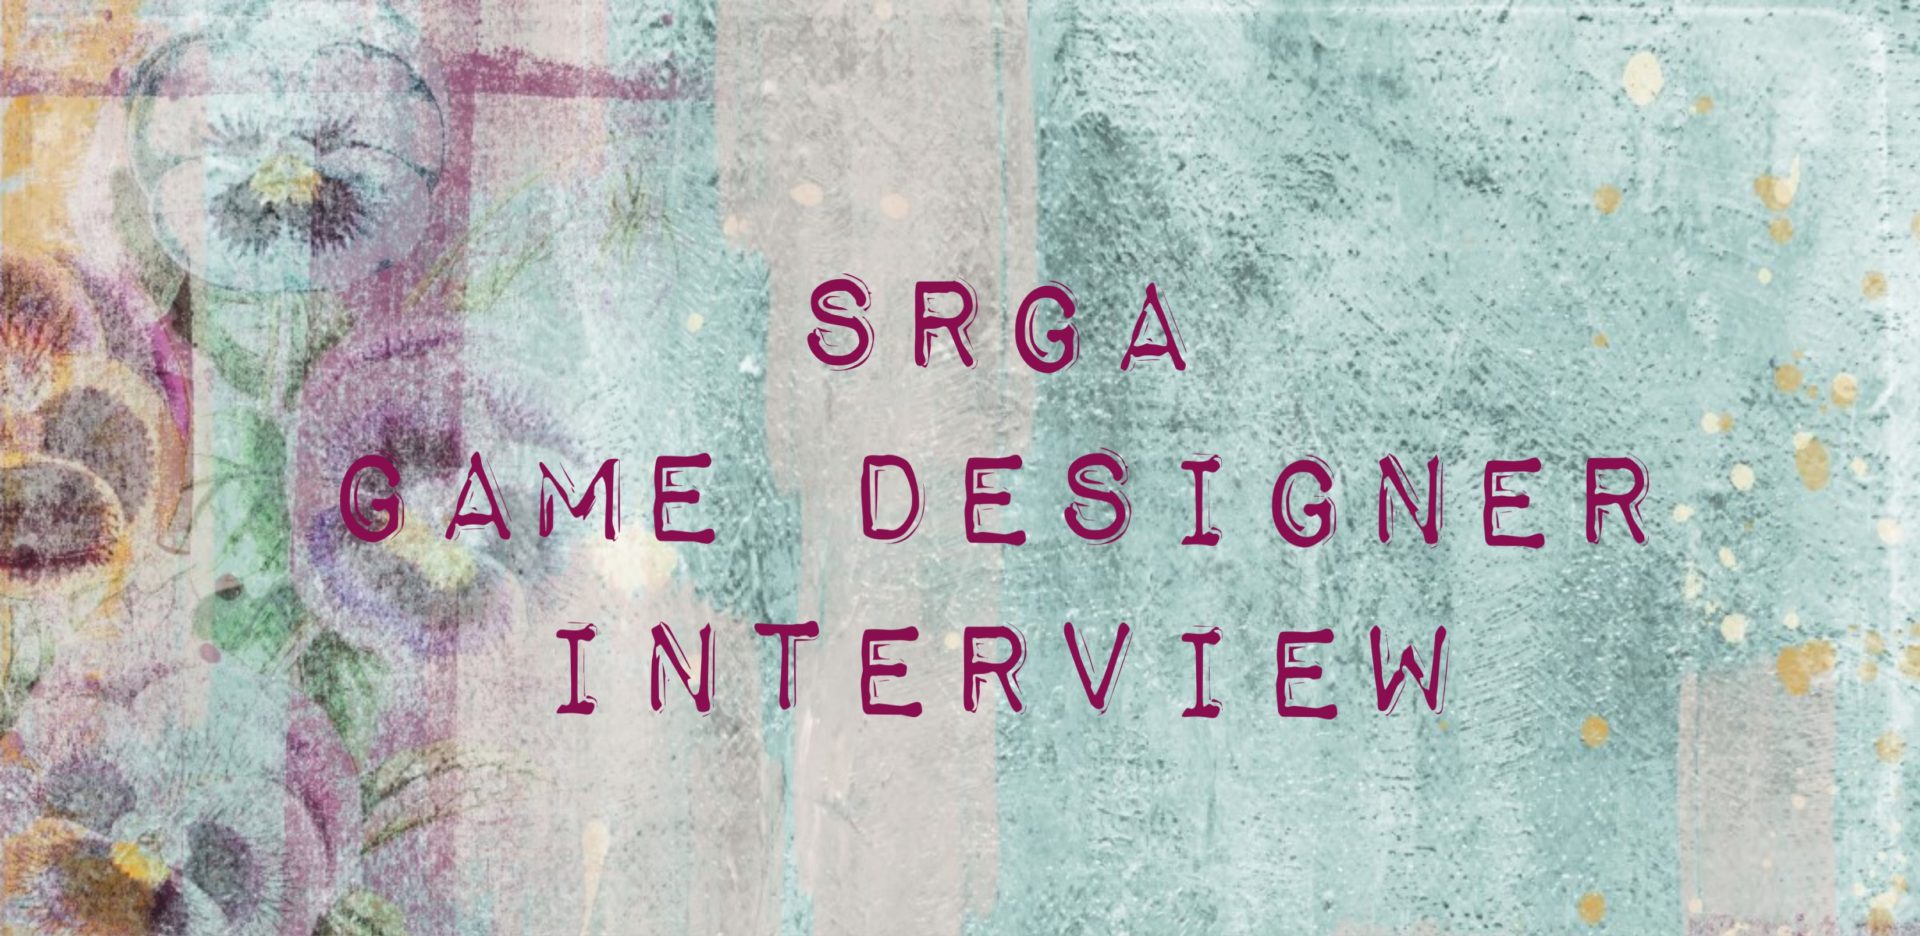 Game designer interview: Jack Ford Morgan